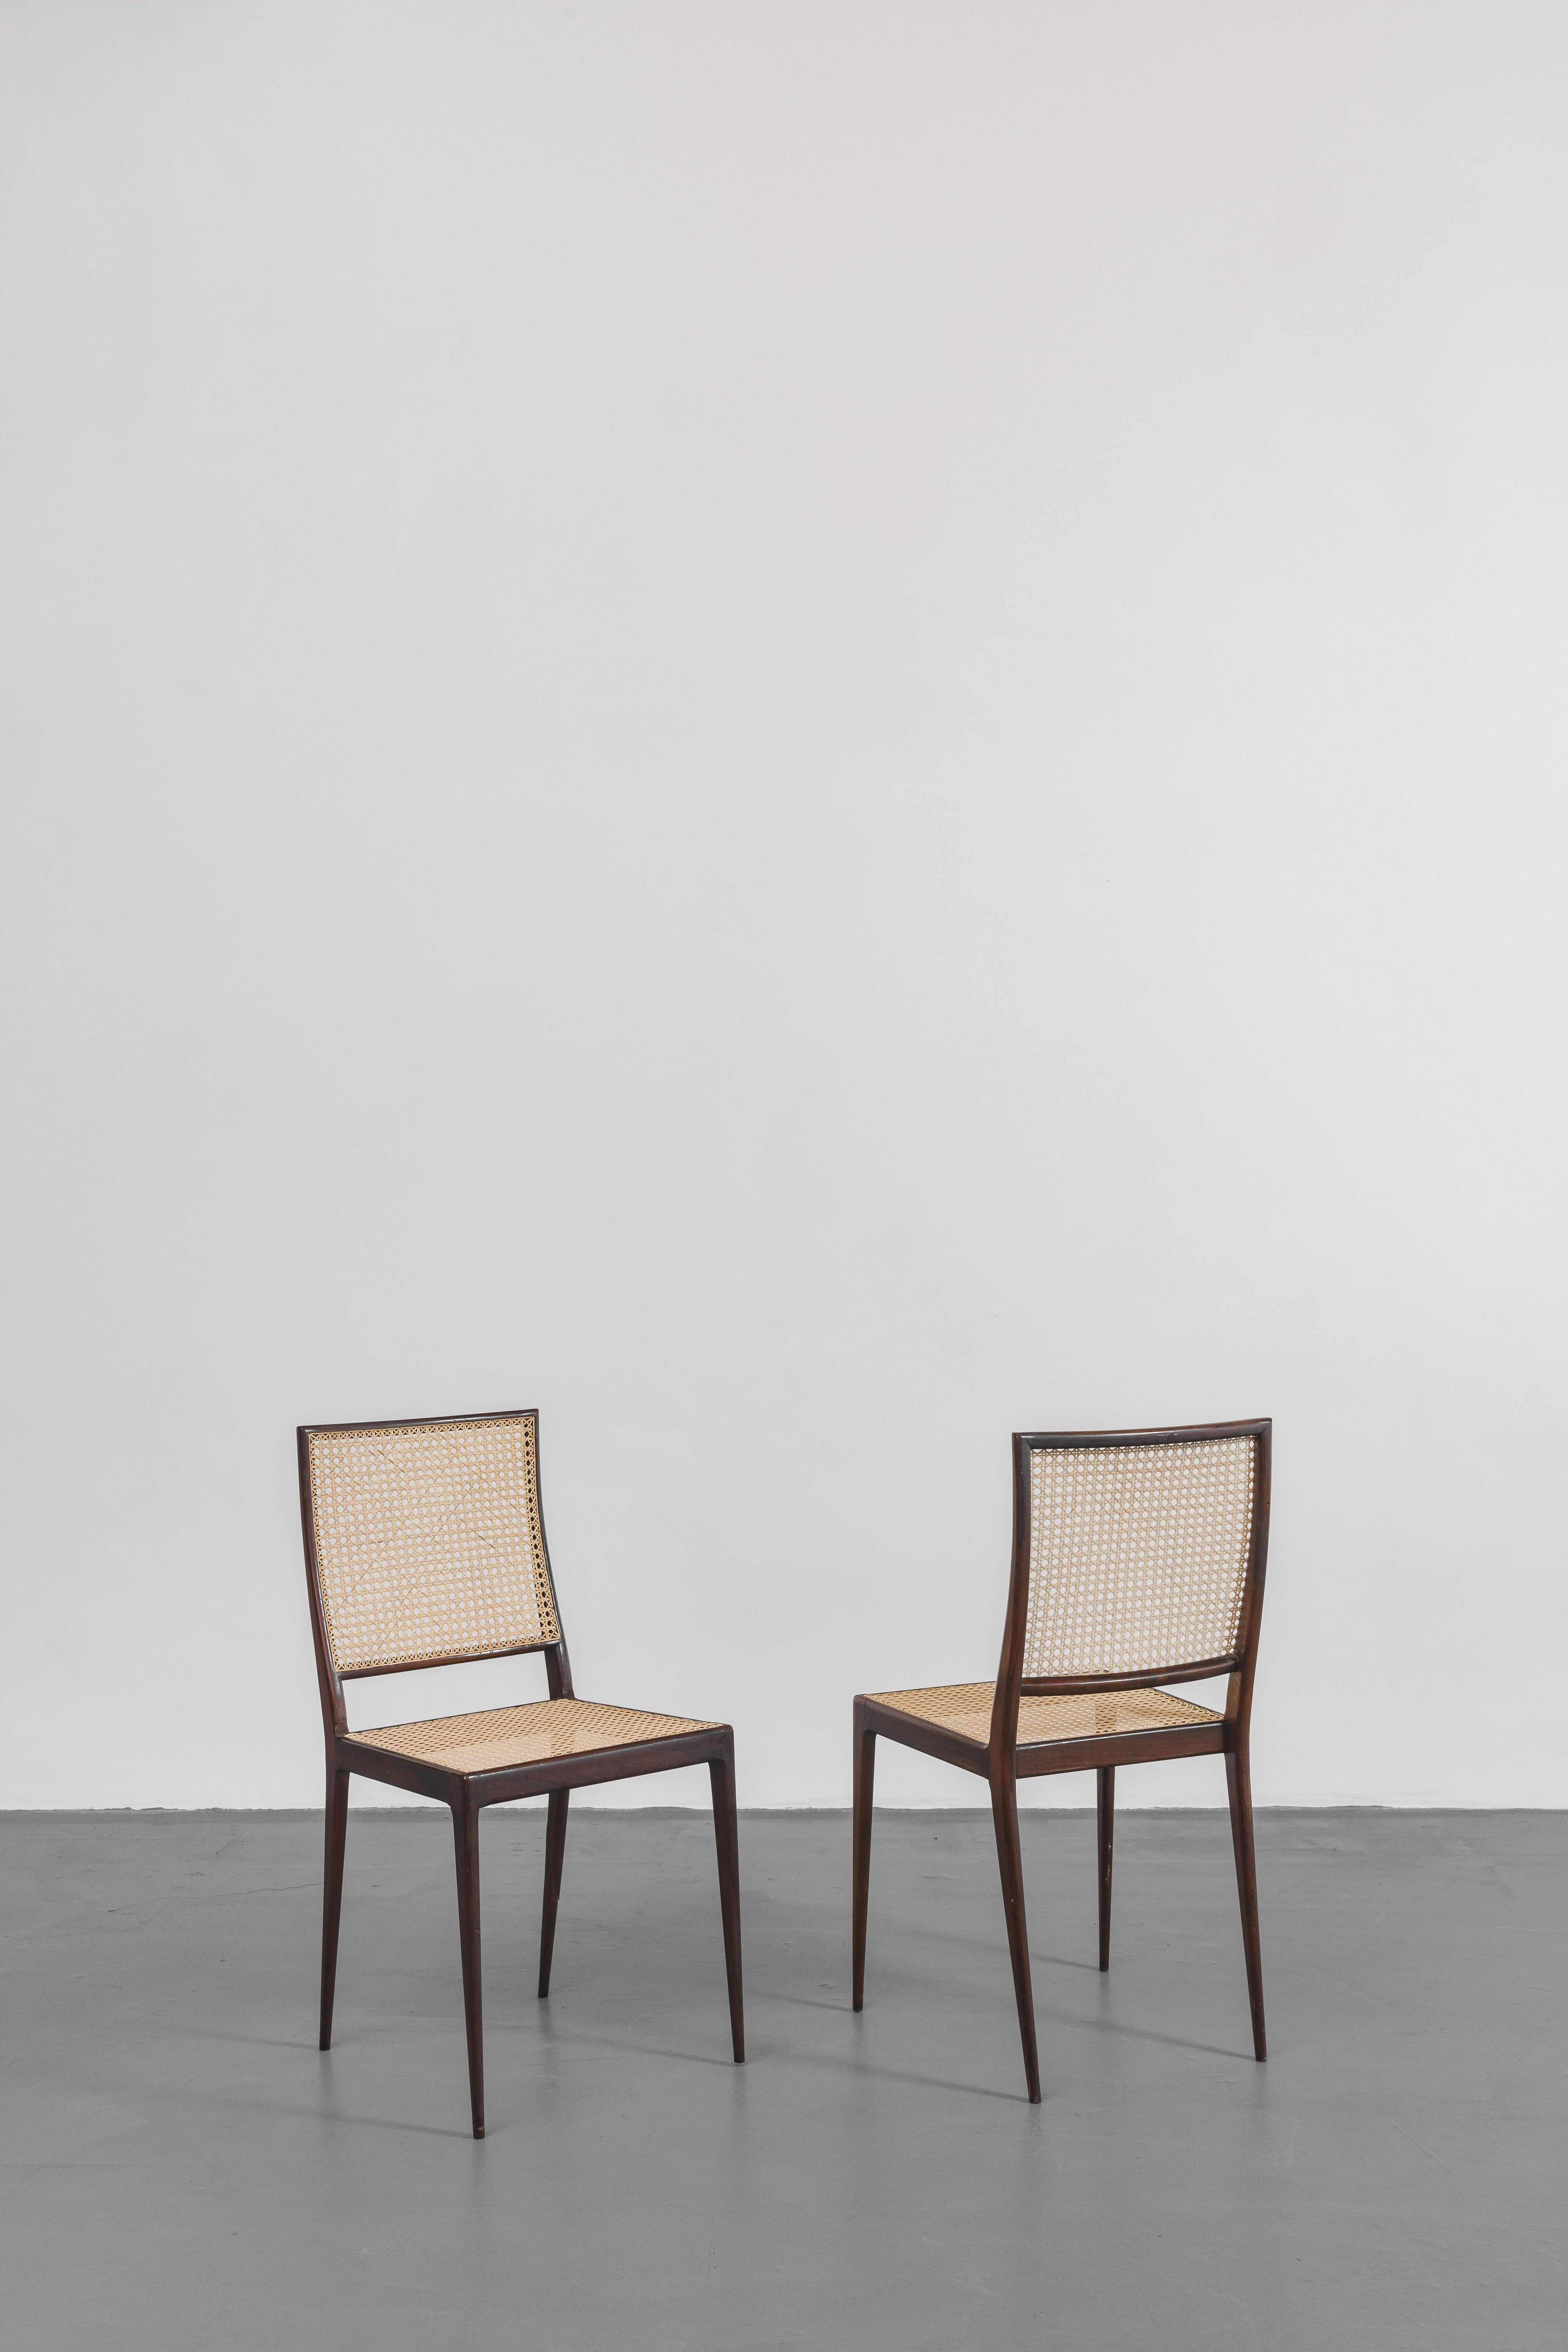 Cet incroyable ensemble de six chaises conçu par Geraldo de Barros (1923-1998) et fabriqué par Unilabor a une structure en bois de rose massif avec des dossiers et des sièges en canne. Parce qu'il s'agit d'un matériau moins dense, le tissage délicat